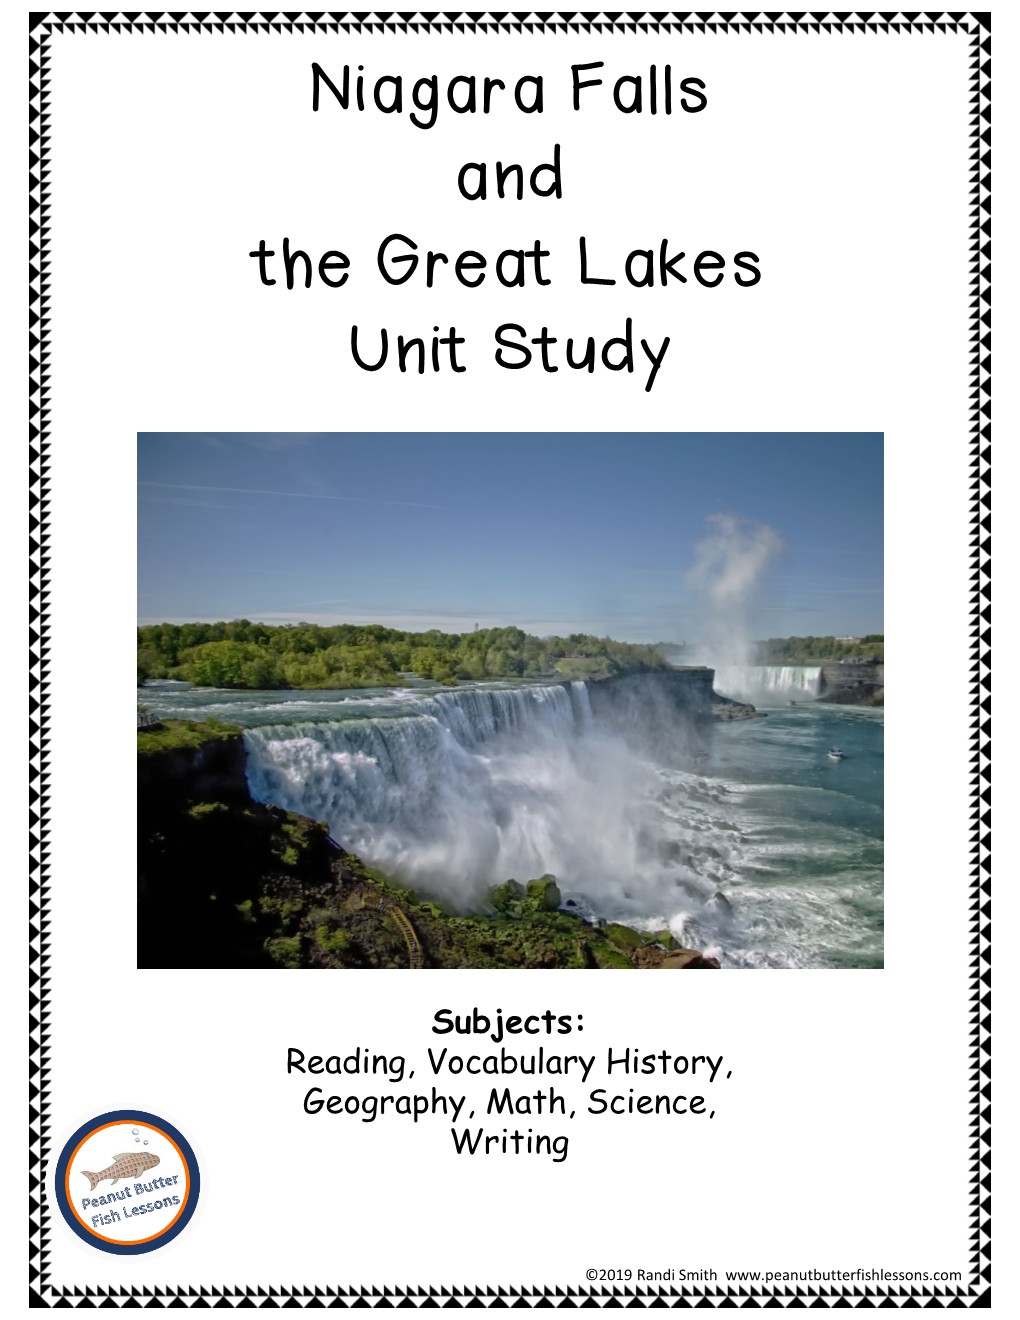 Niagara Falls and the Great Lakes Unit Study